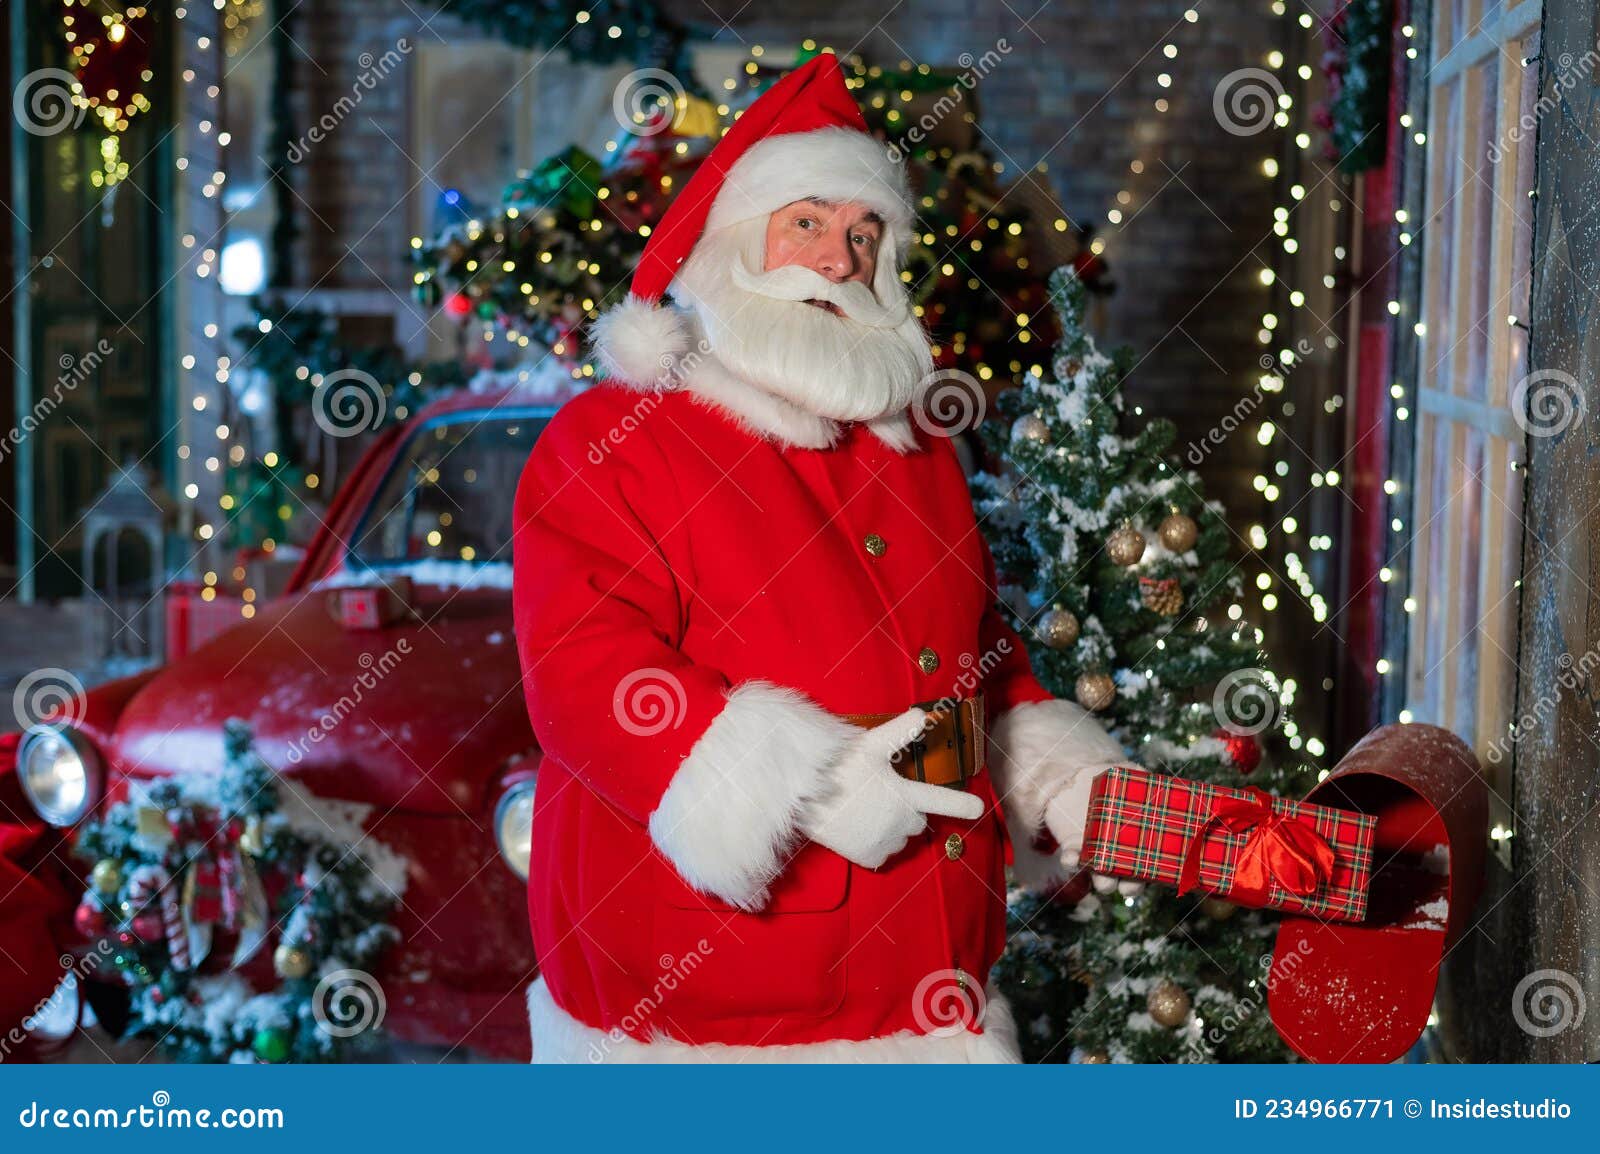 Versterken Bewijs Missie Santa Claus Stuurt Een Geschenk Per Post. Een Man Verkleed Als Een Kerstman  Plaatst Een Versierde Doos in Een Brievenbus Stock Afbeelding - Image of  licht, boog: 234966771